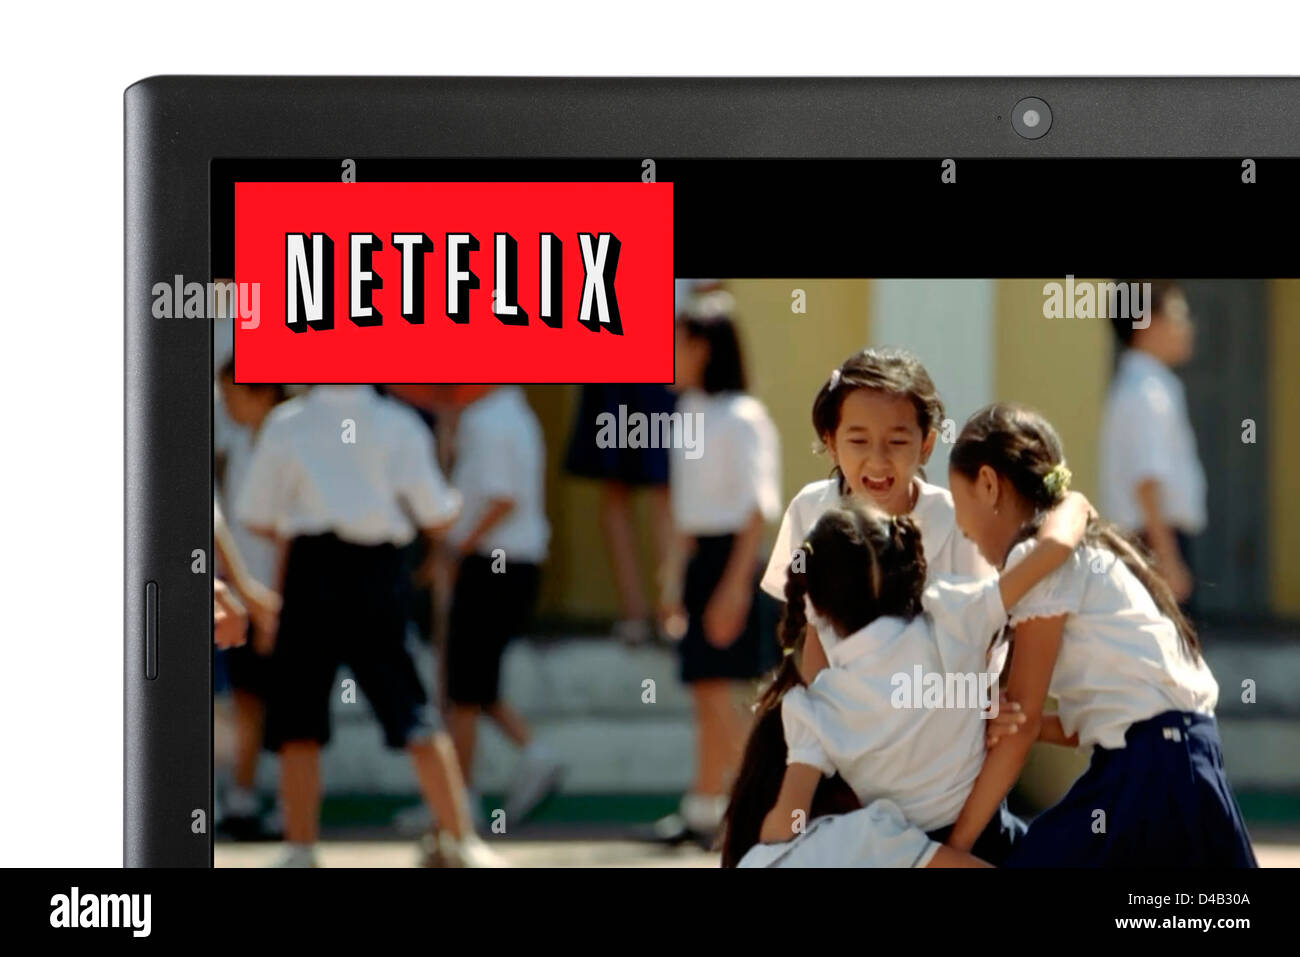 Viendo una película vía streaming online Netflix en un ordenador portátil, REINO UNIDO Foto de stock